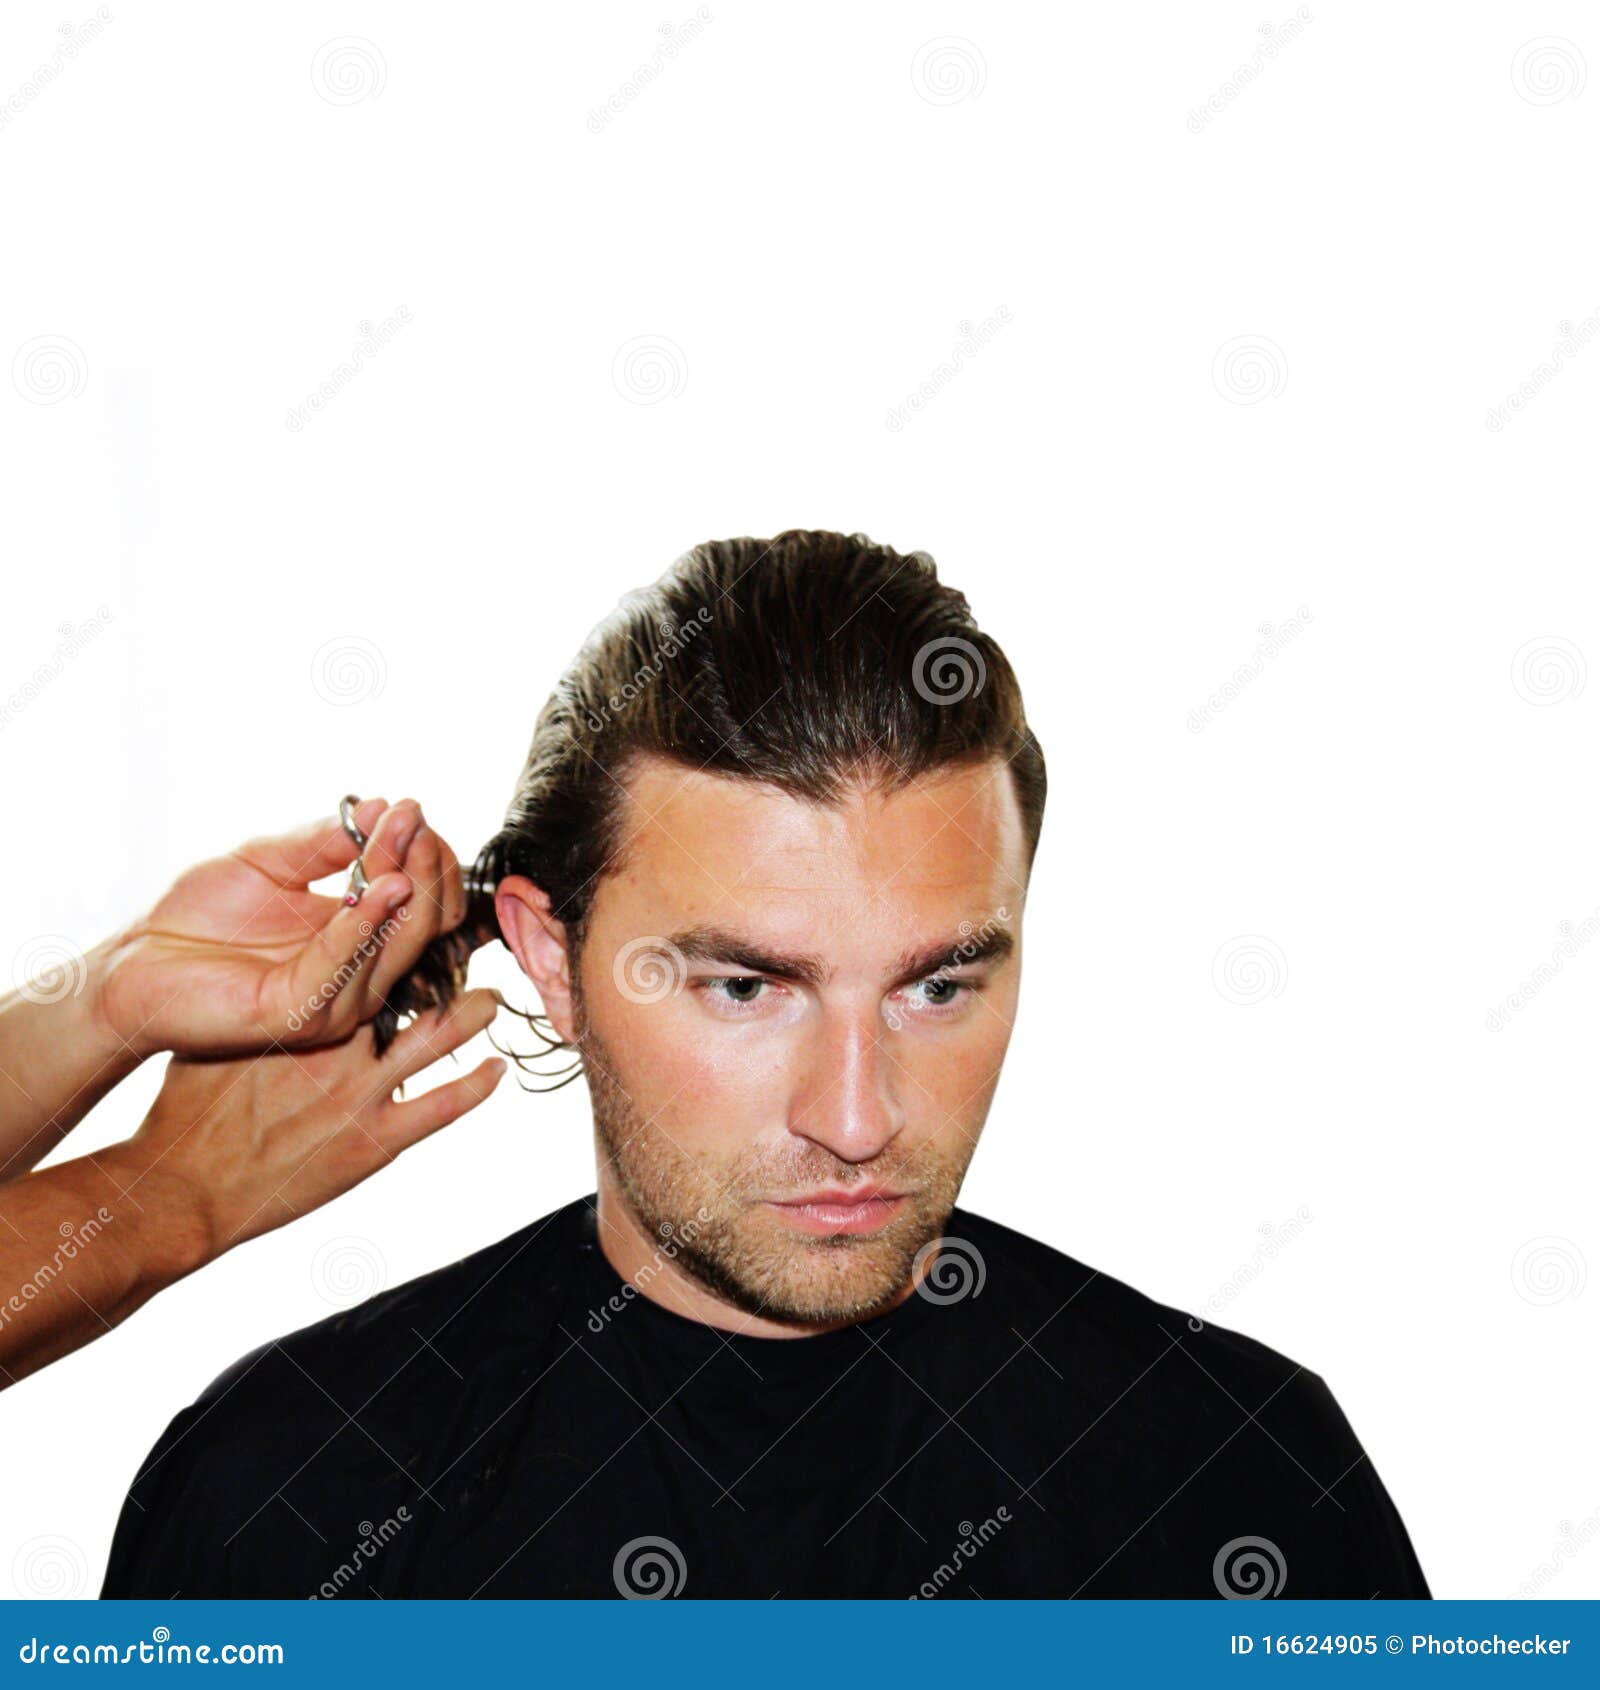 美发师在做理发的工作 库存图片. 图片 包括有 职业, 烘干, 头发, 专业人员, 女性, 梳子, 生活方式 - 78892333